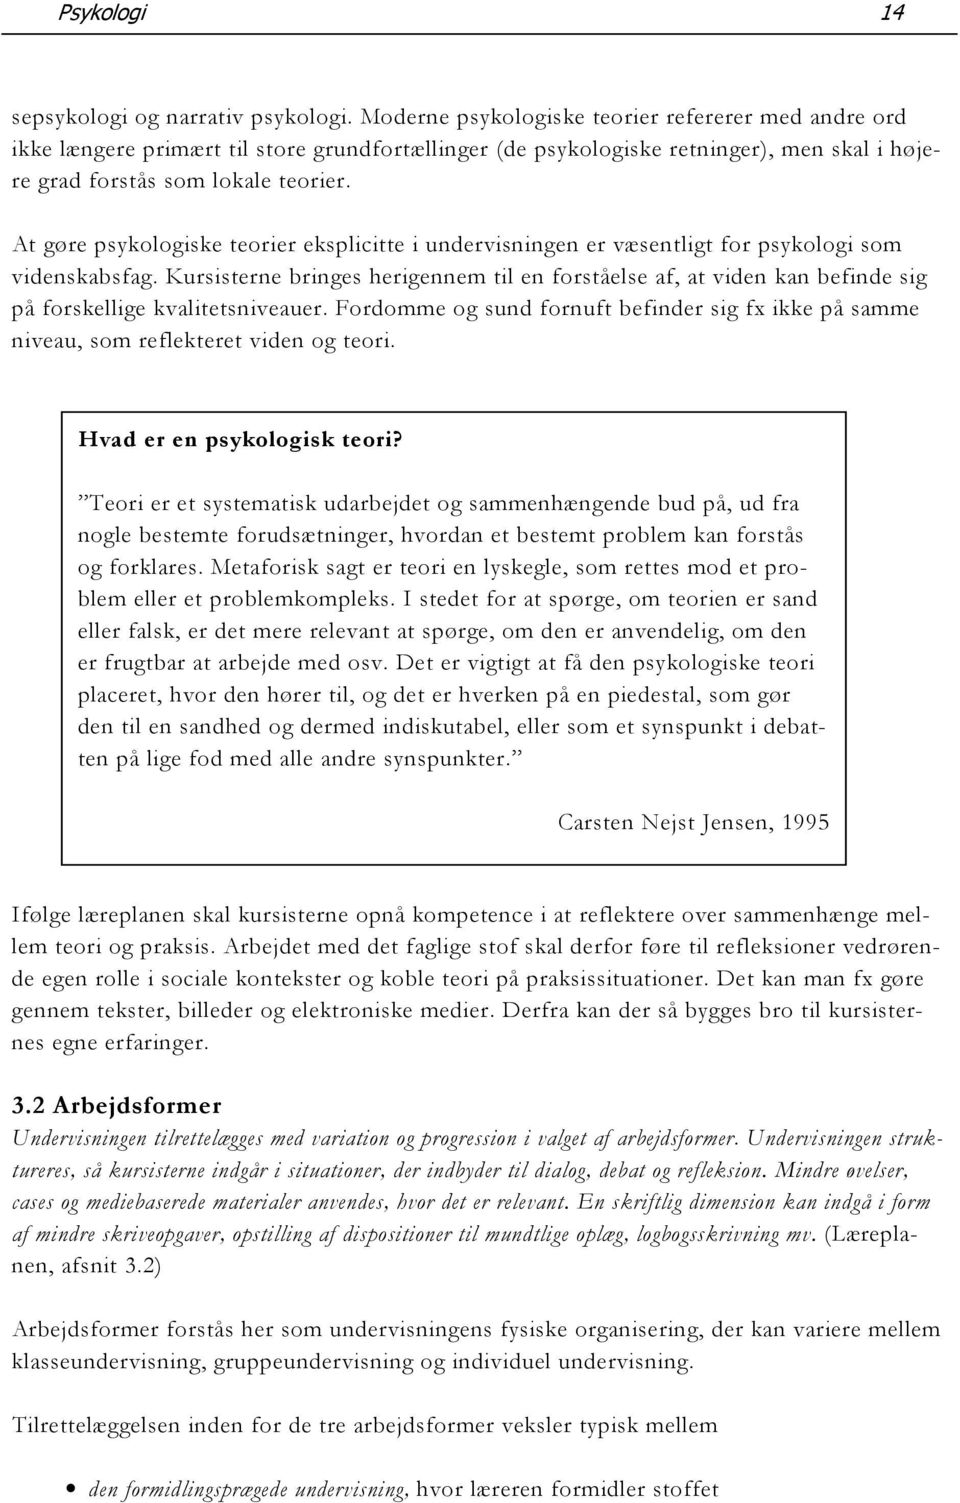 At gøre psykologiske teorier eksplicitte i undervisningen er væsentligt for psykologi som videnskabsfag.